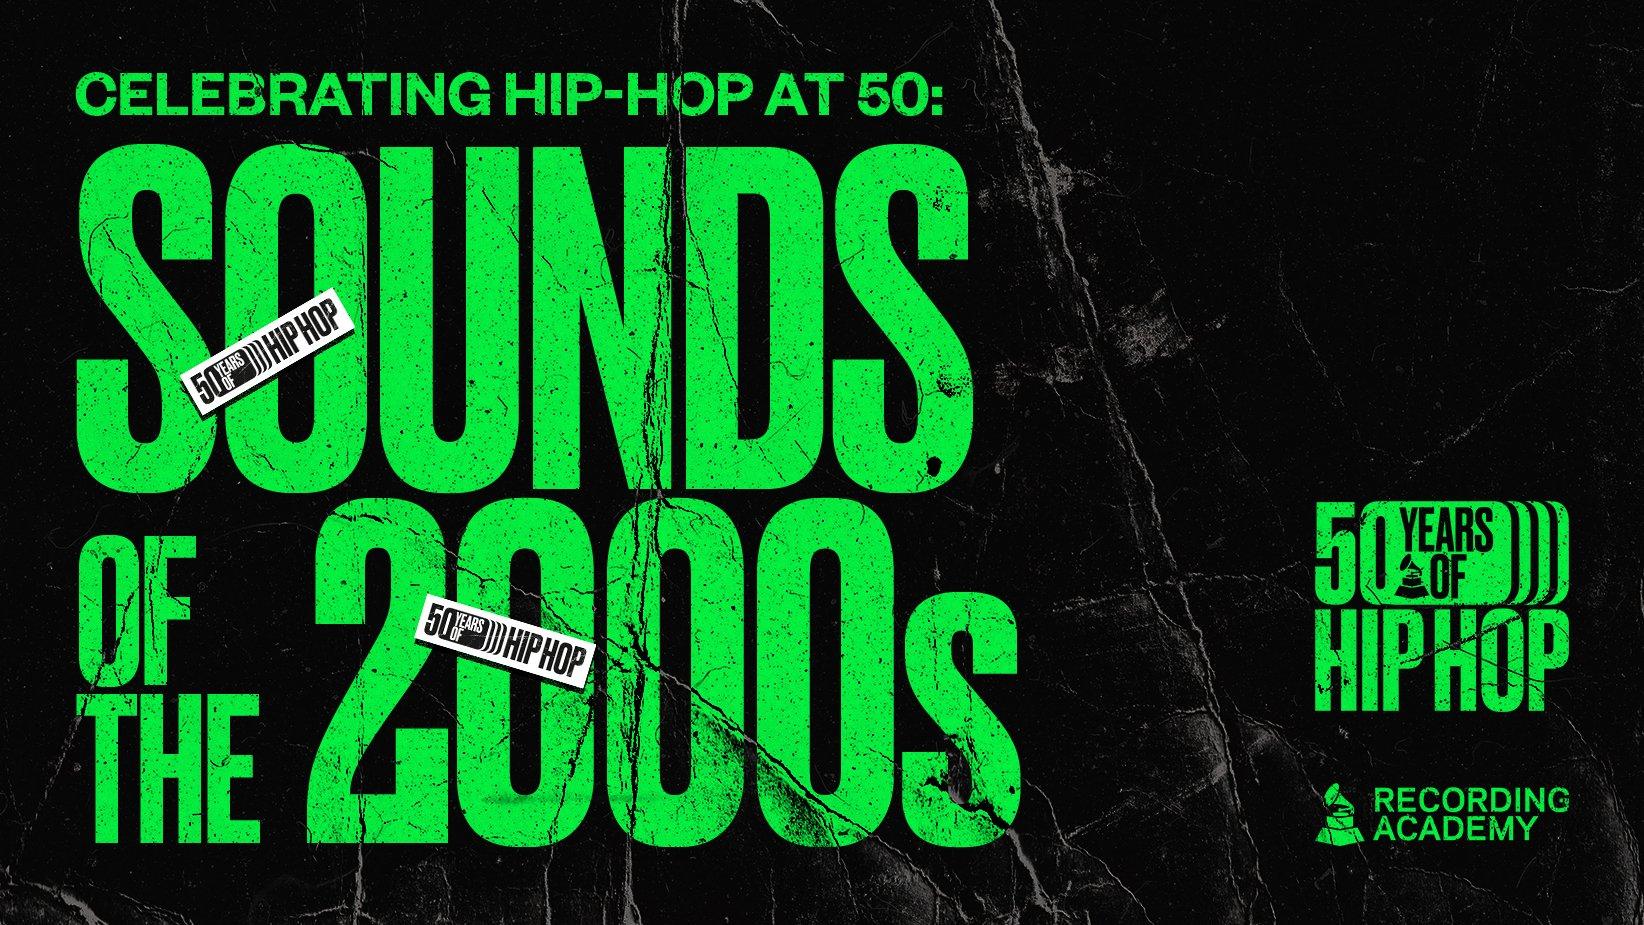 essential hip hop albums 2000s album covers